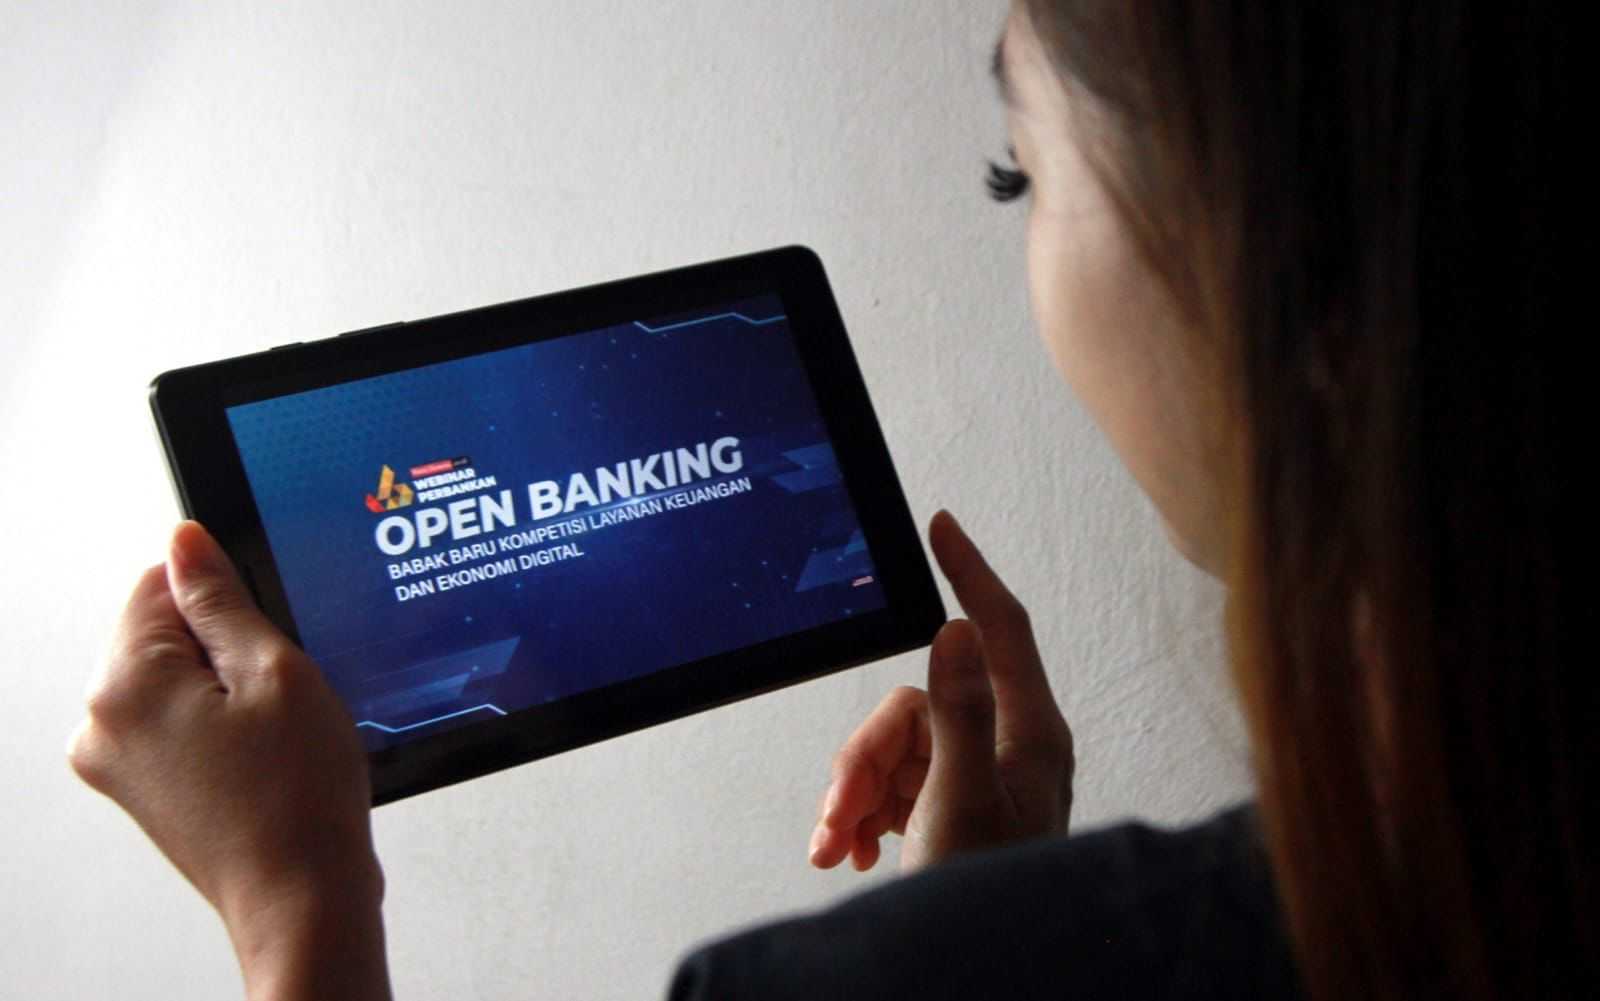 SNAP Dorong Implementasi Open Banking Lebih Efisien dan Aman